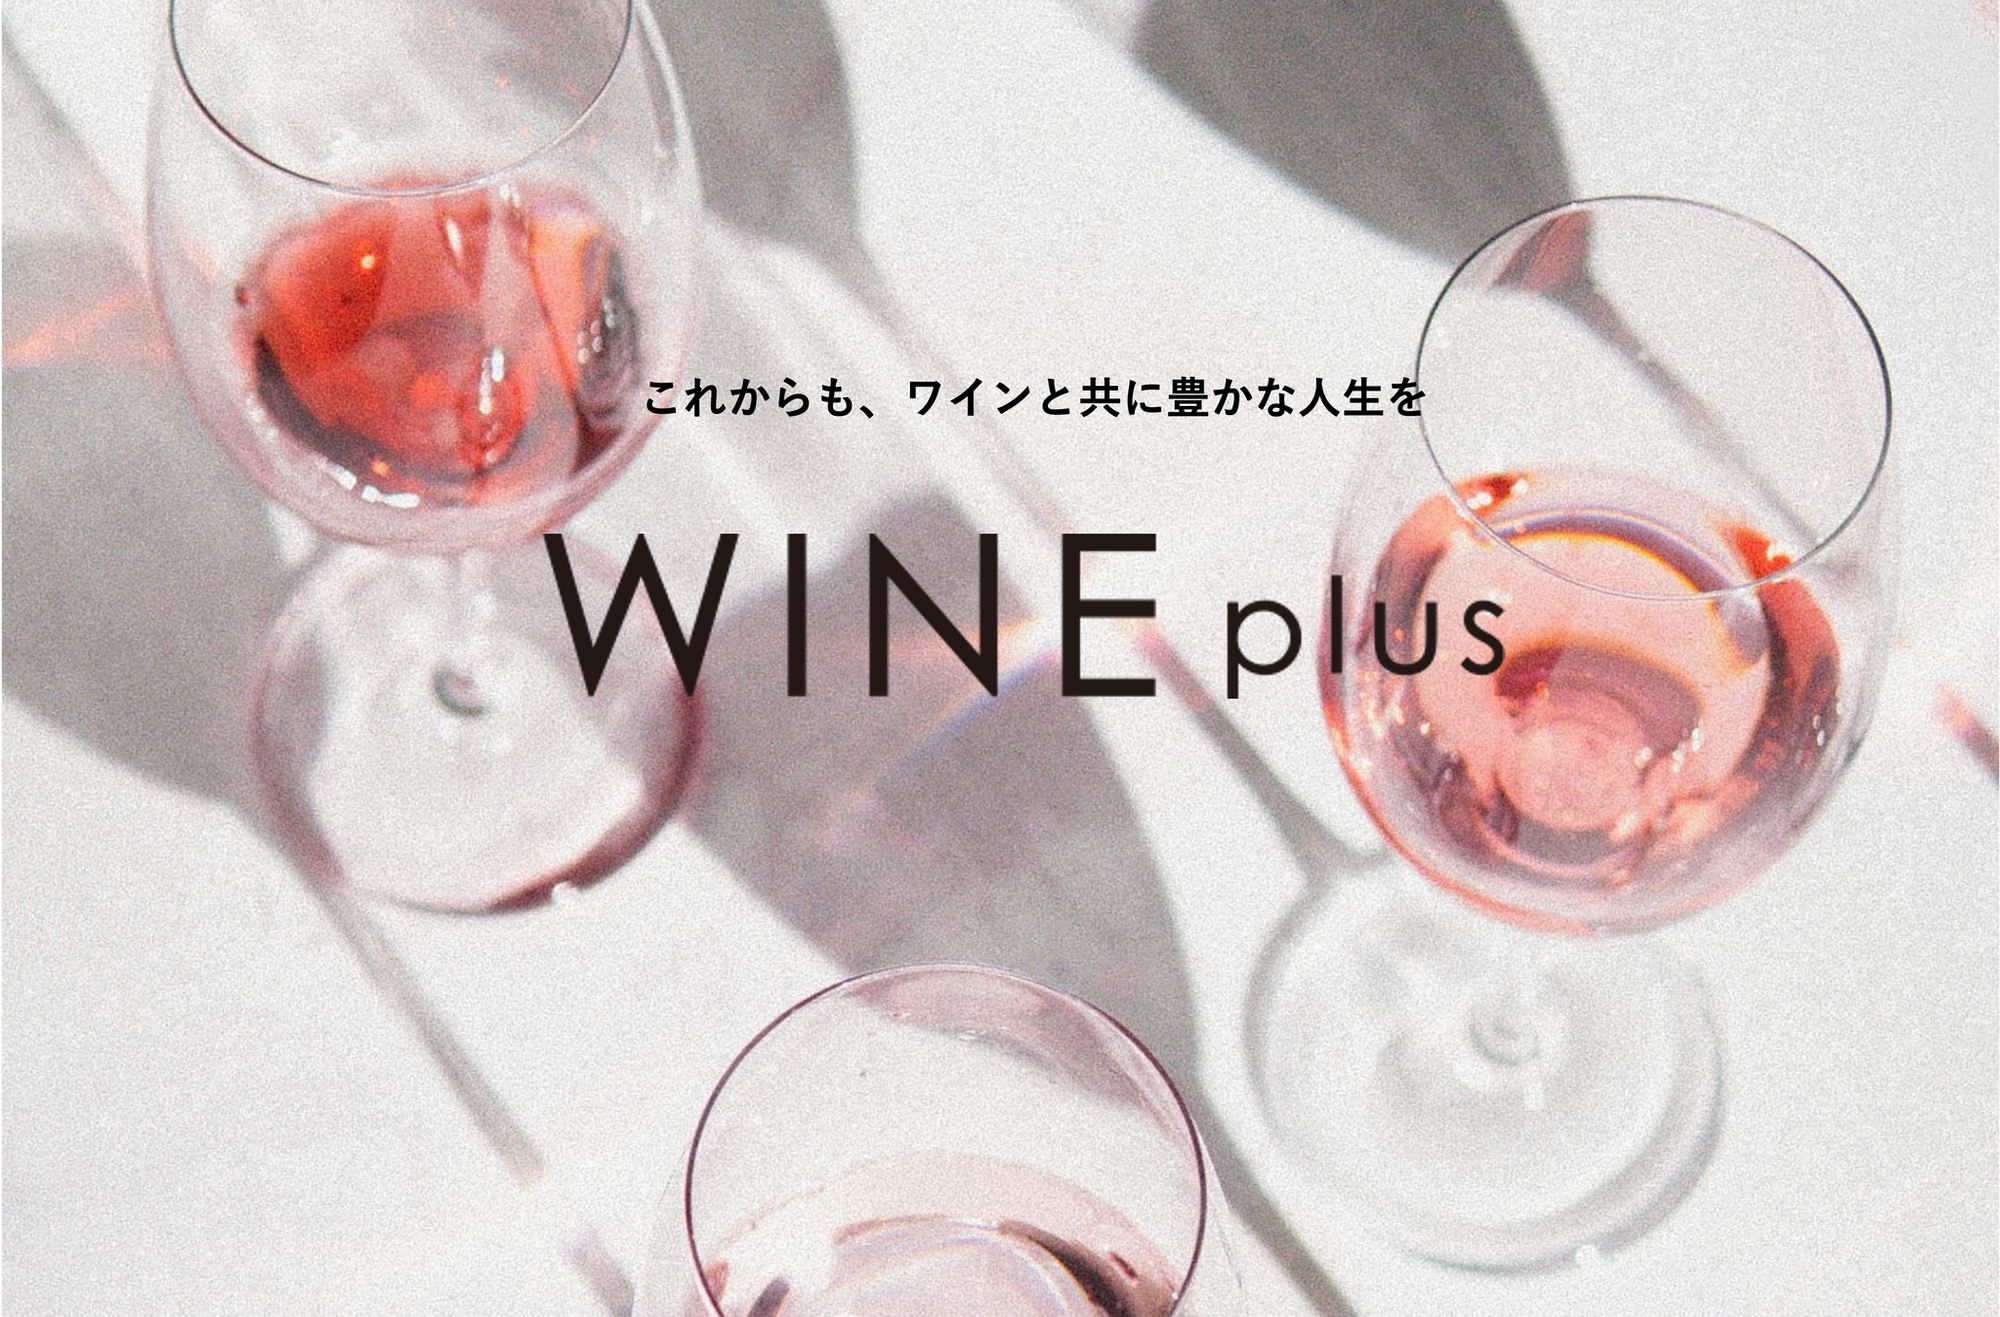 2022年1月、広尾に誕生した「WINE plus」